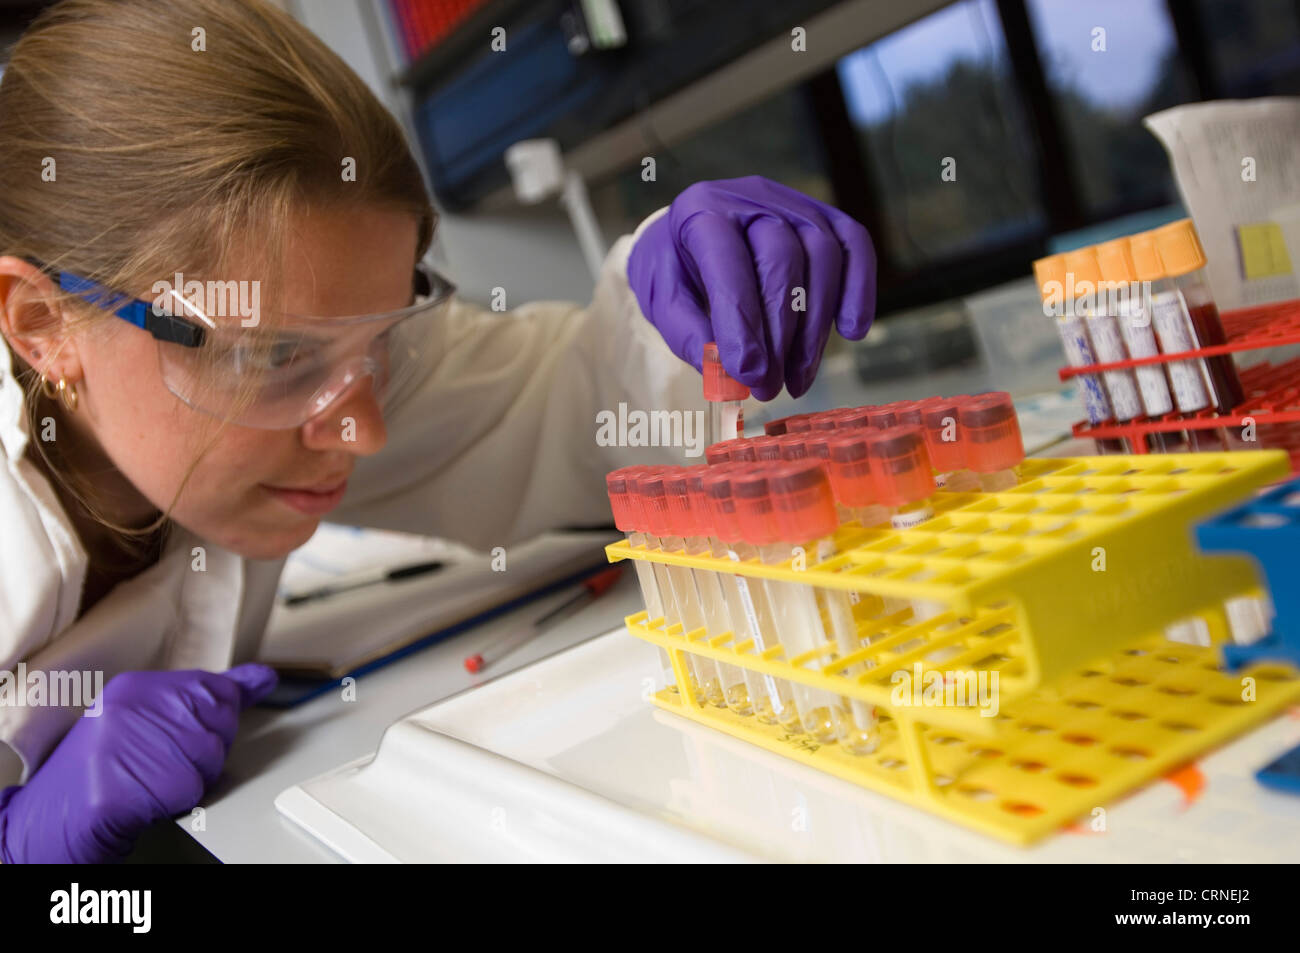 Uno scienziato controlla un vassoio di campioni in un laboratorio Foto Stock